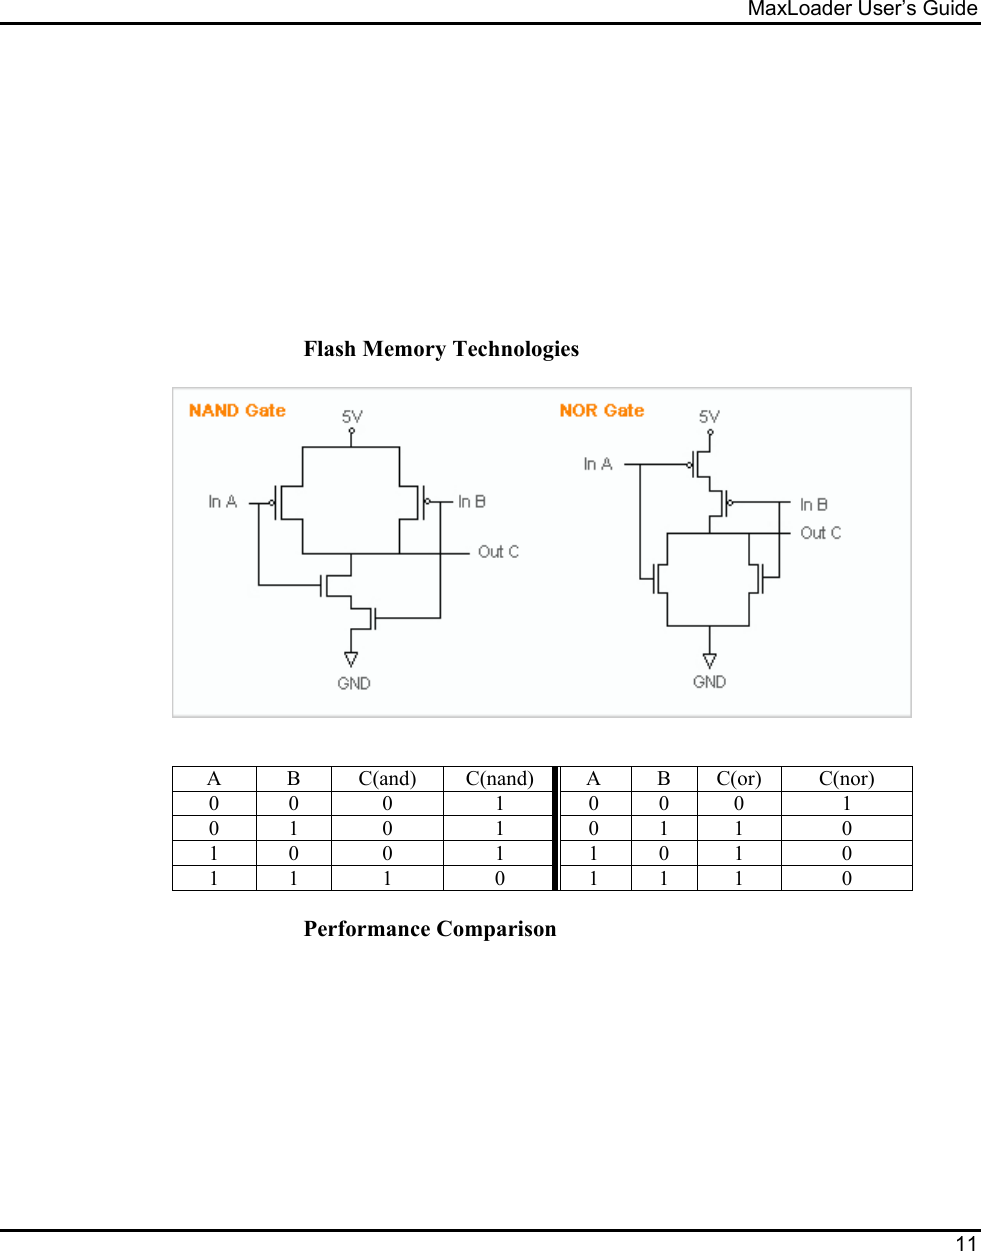 MaxLoader User’s Guide  11            Flash Memory Technologies     A B C(and) C(nand) A B C(or) C(nor) 0 0 0  1 0 0 0  1 0 1 0  1 0 1 1  0 1 0 0  1 1 0 1  0 1 1 1  0 1 1 1  0  Performance Comparison 